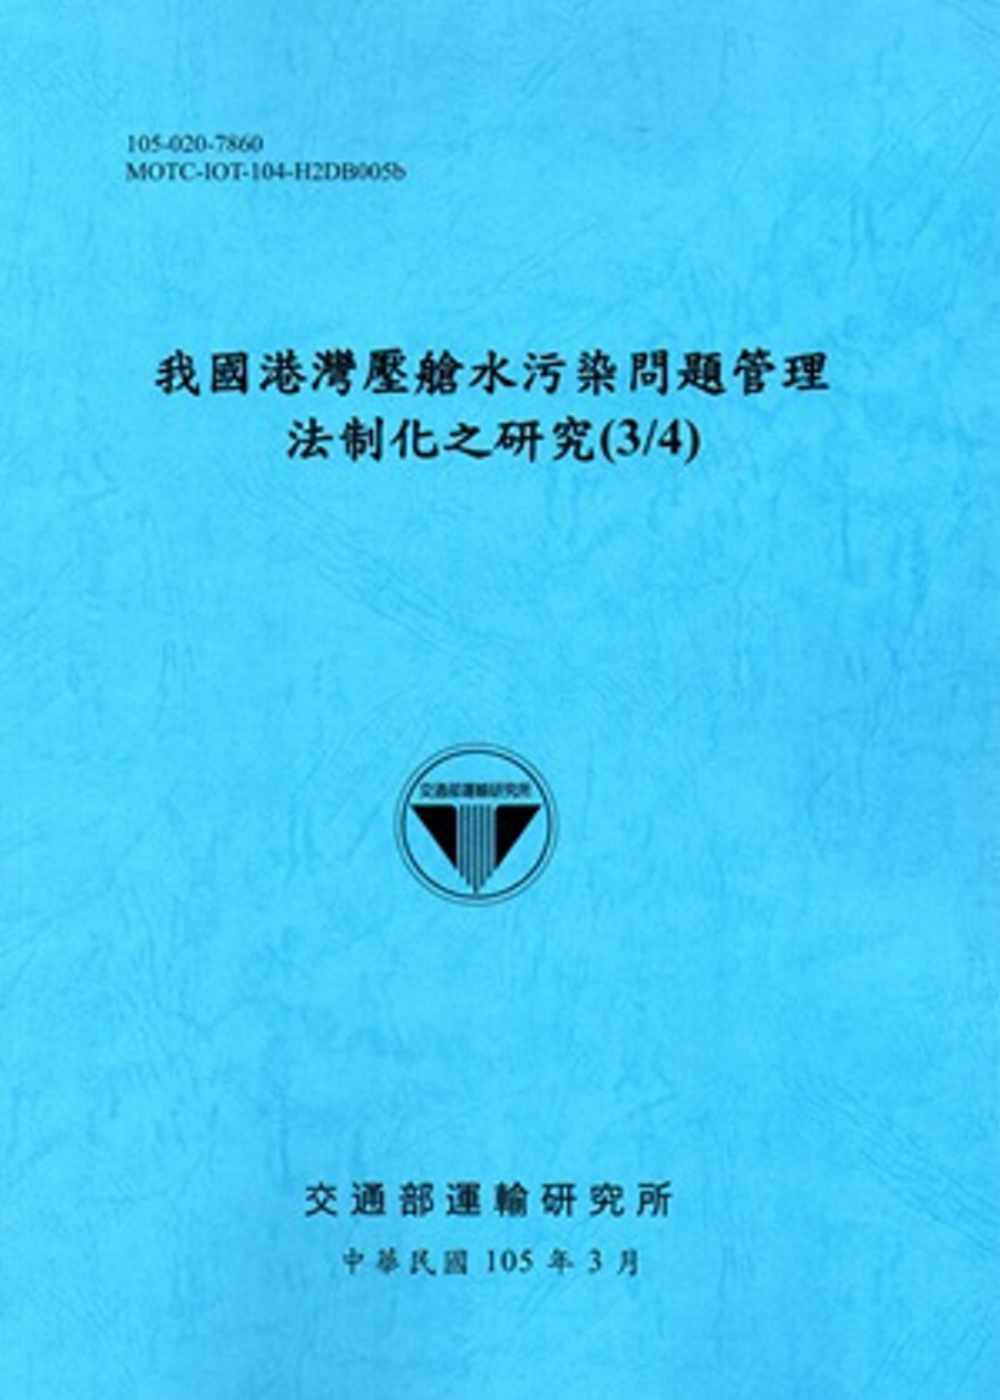 我國港灣壓艙水污染問題管理法制化之研究(3/4)[105藍]